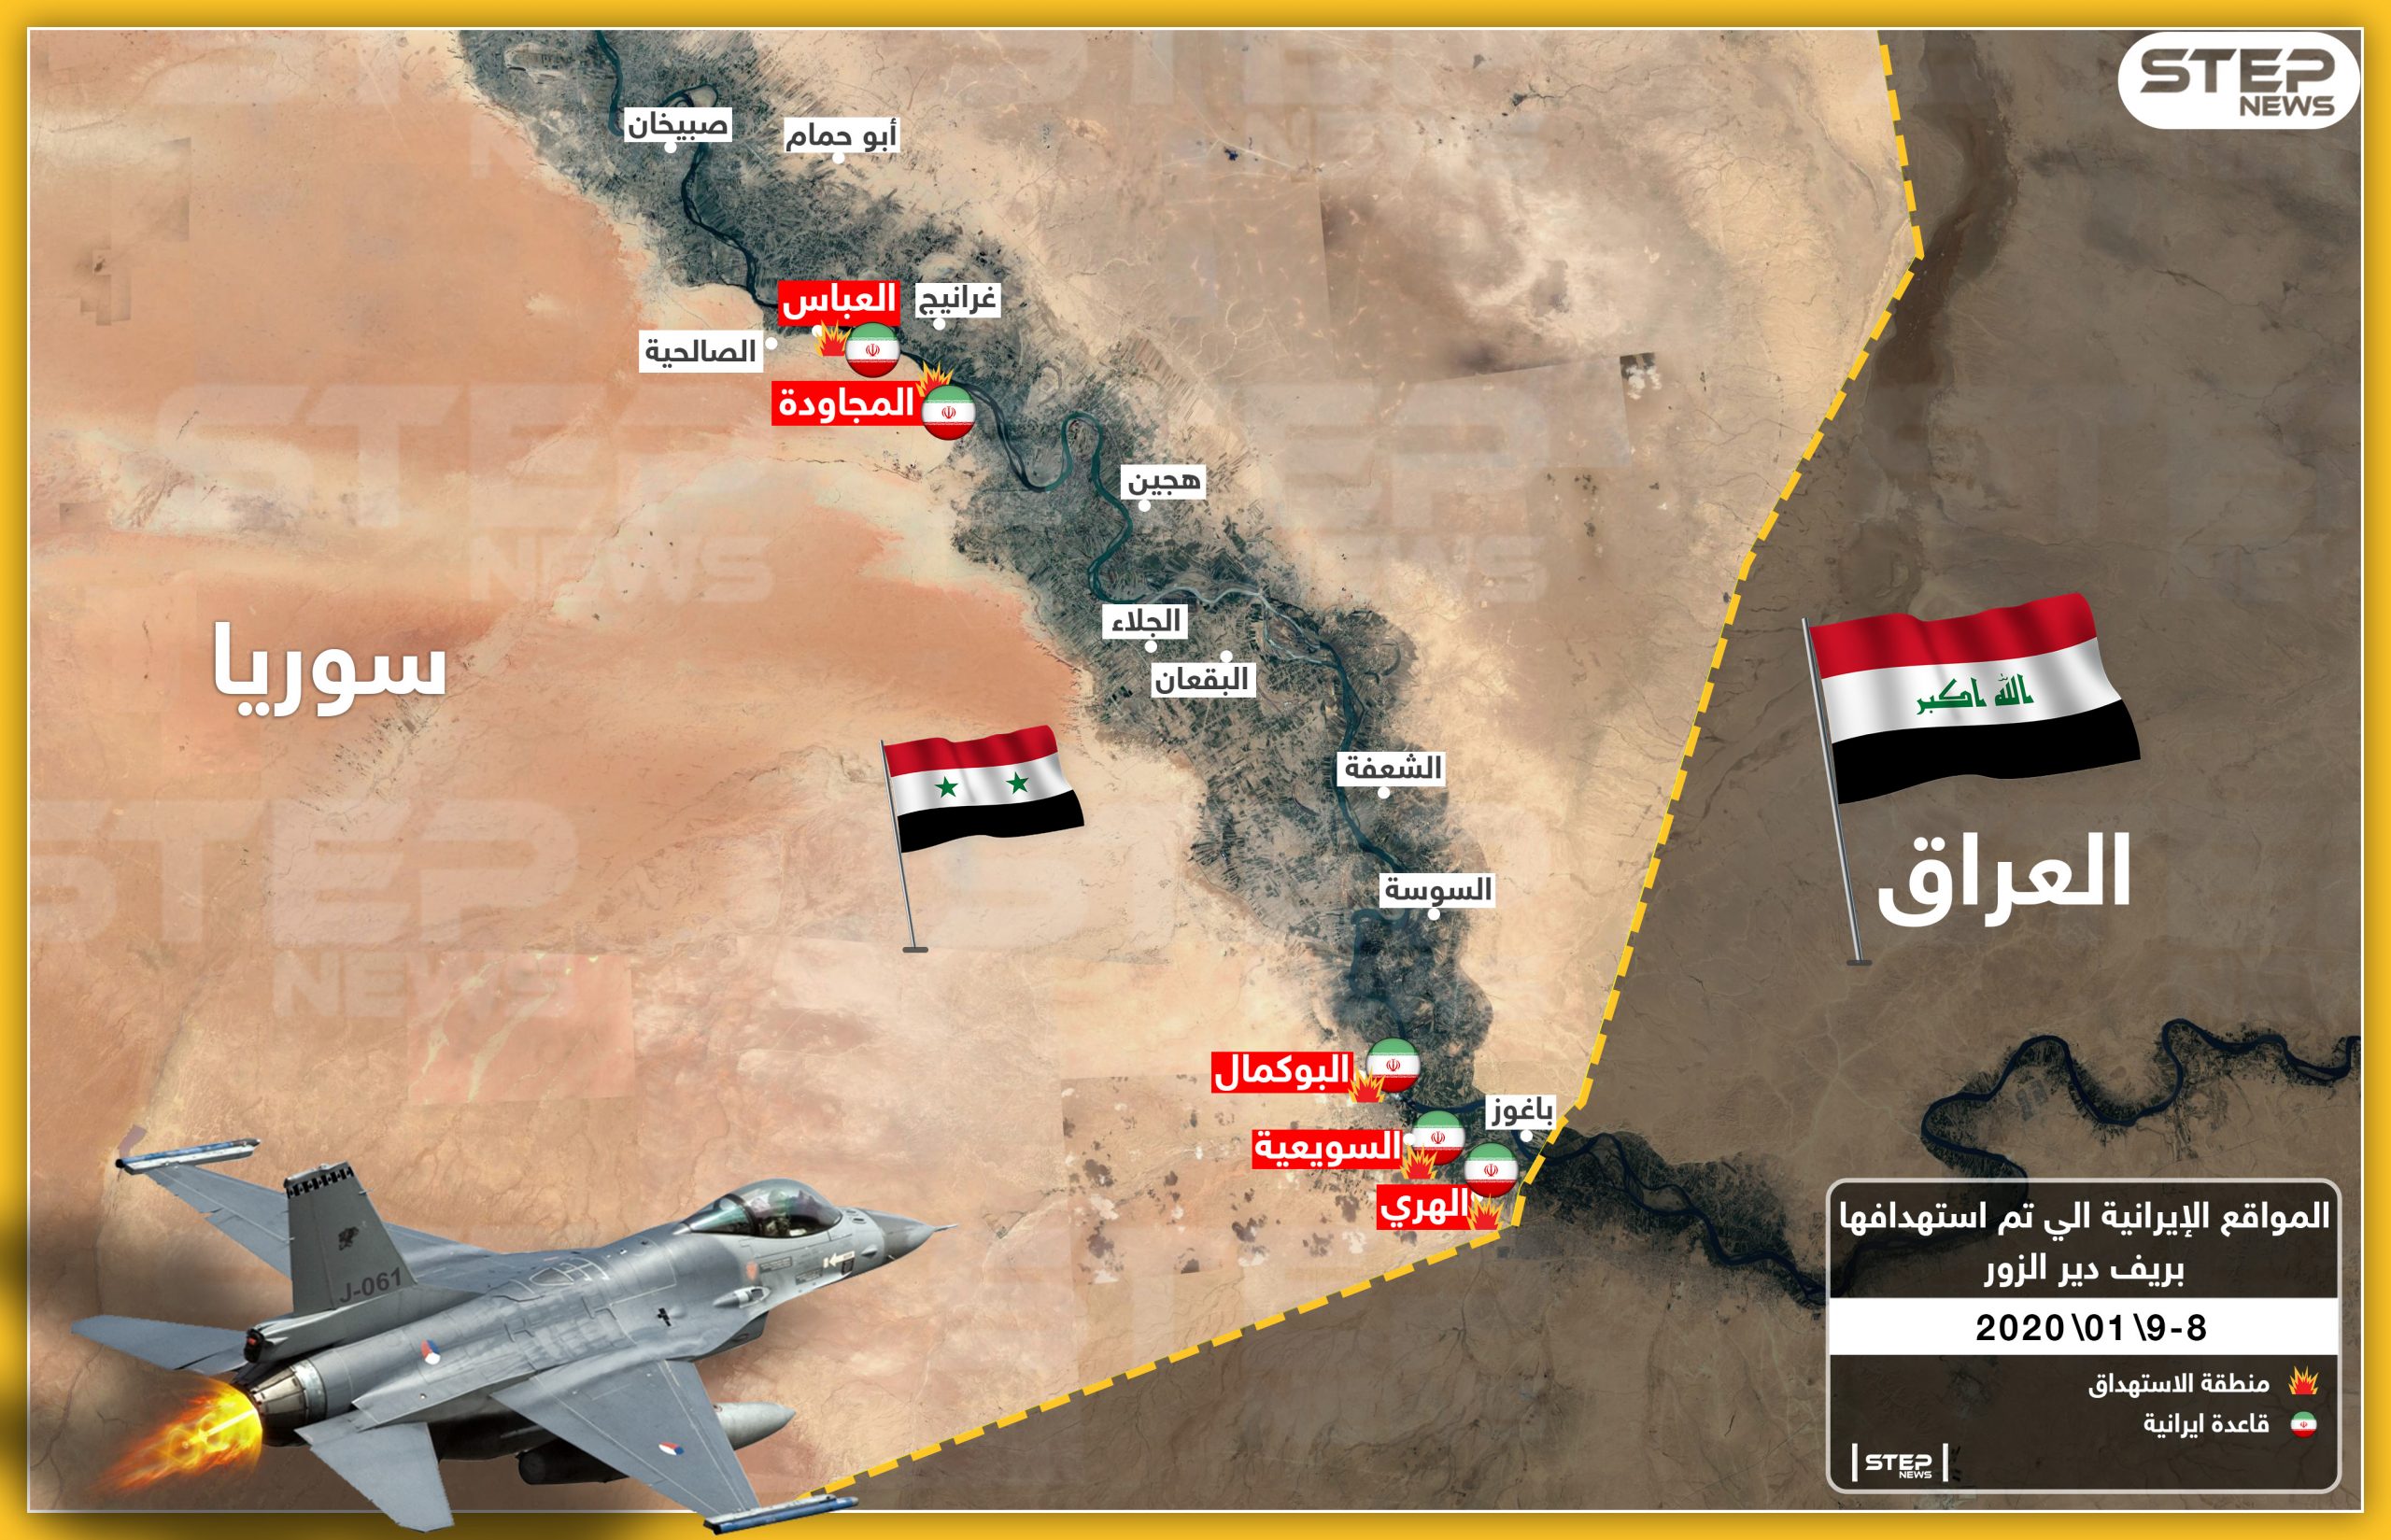 شاهد بالخريطة|| هذه المواقع الإيرانية التي دُمّرت بواسطة "الطيران المجهول" في البوكمال السوري